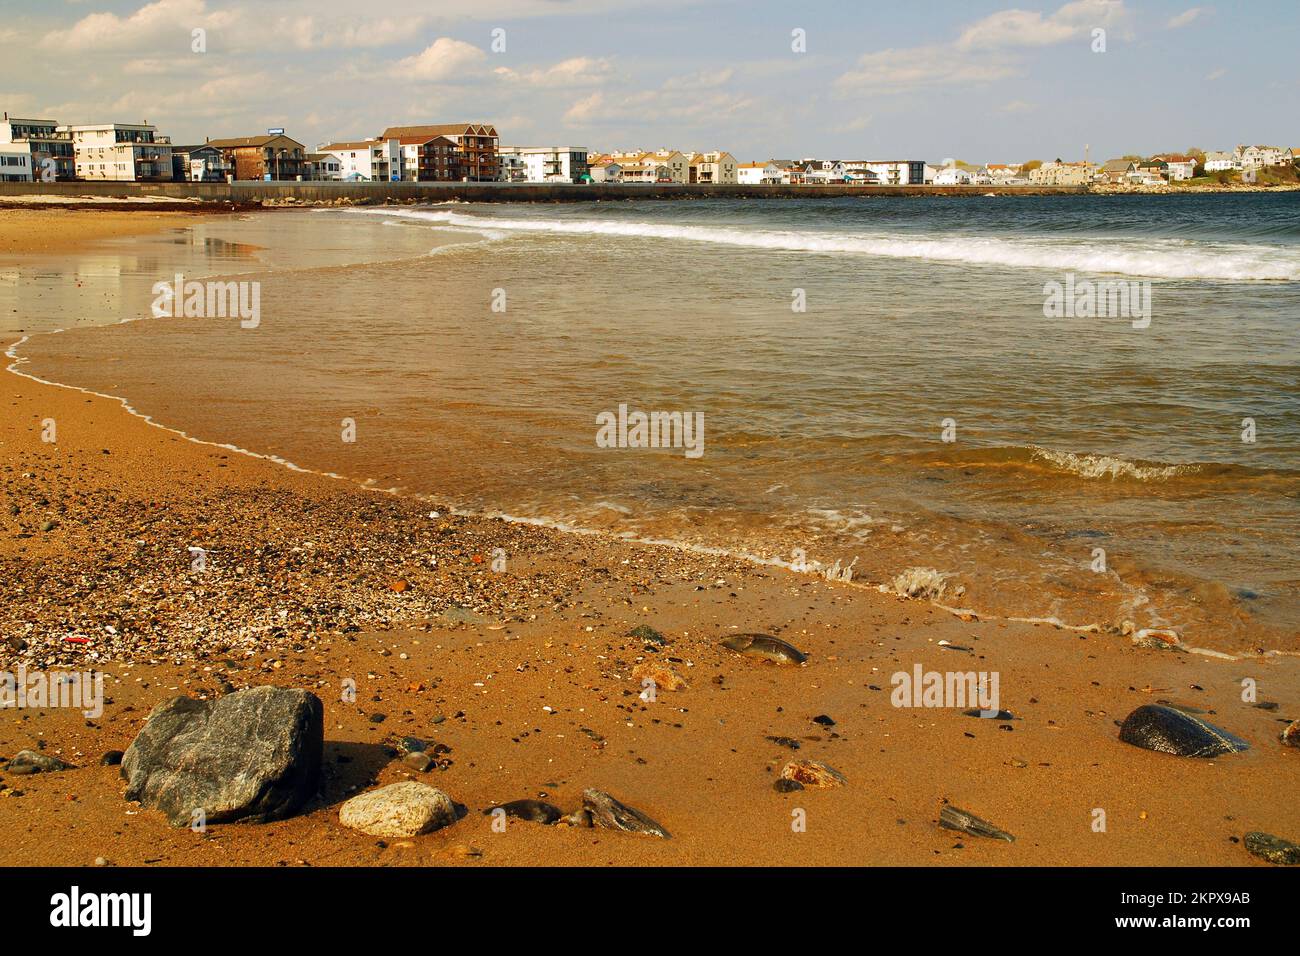 Una costa rocosa en las afueras de la ciudad donde las casas de verano bordean la costa Foto de stock